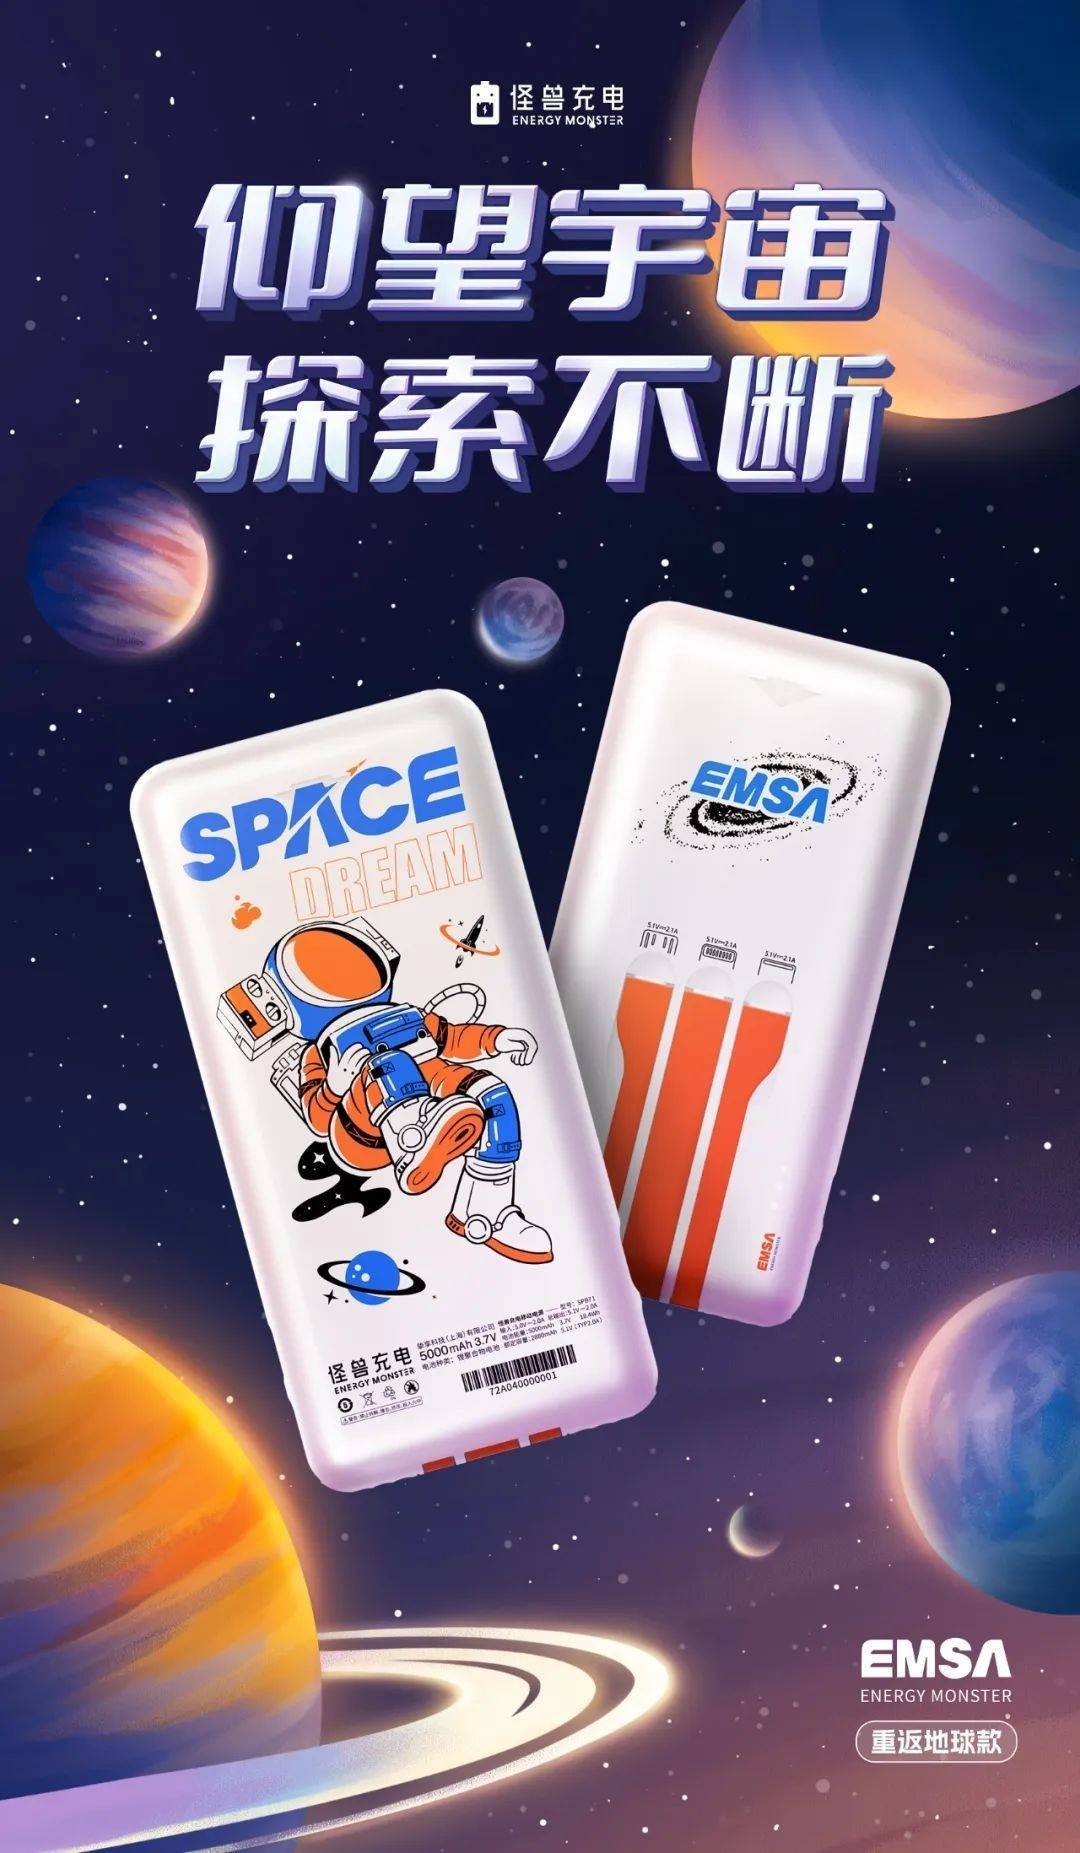 长宁企业怪兽充电推出“宇宙探索充电宝”插图6